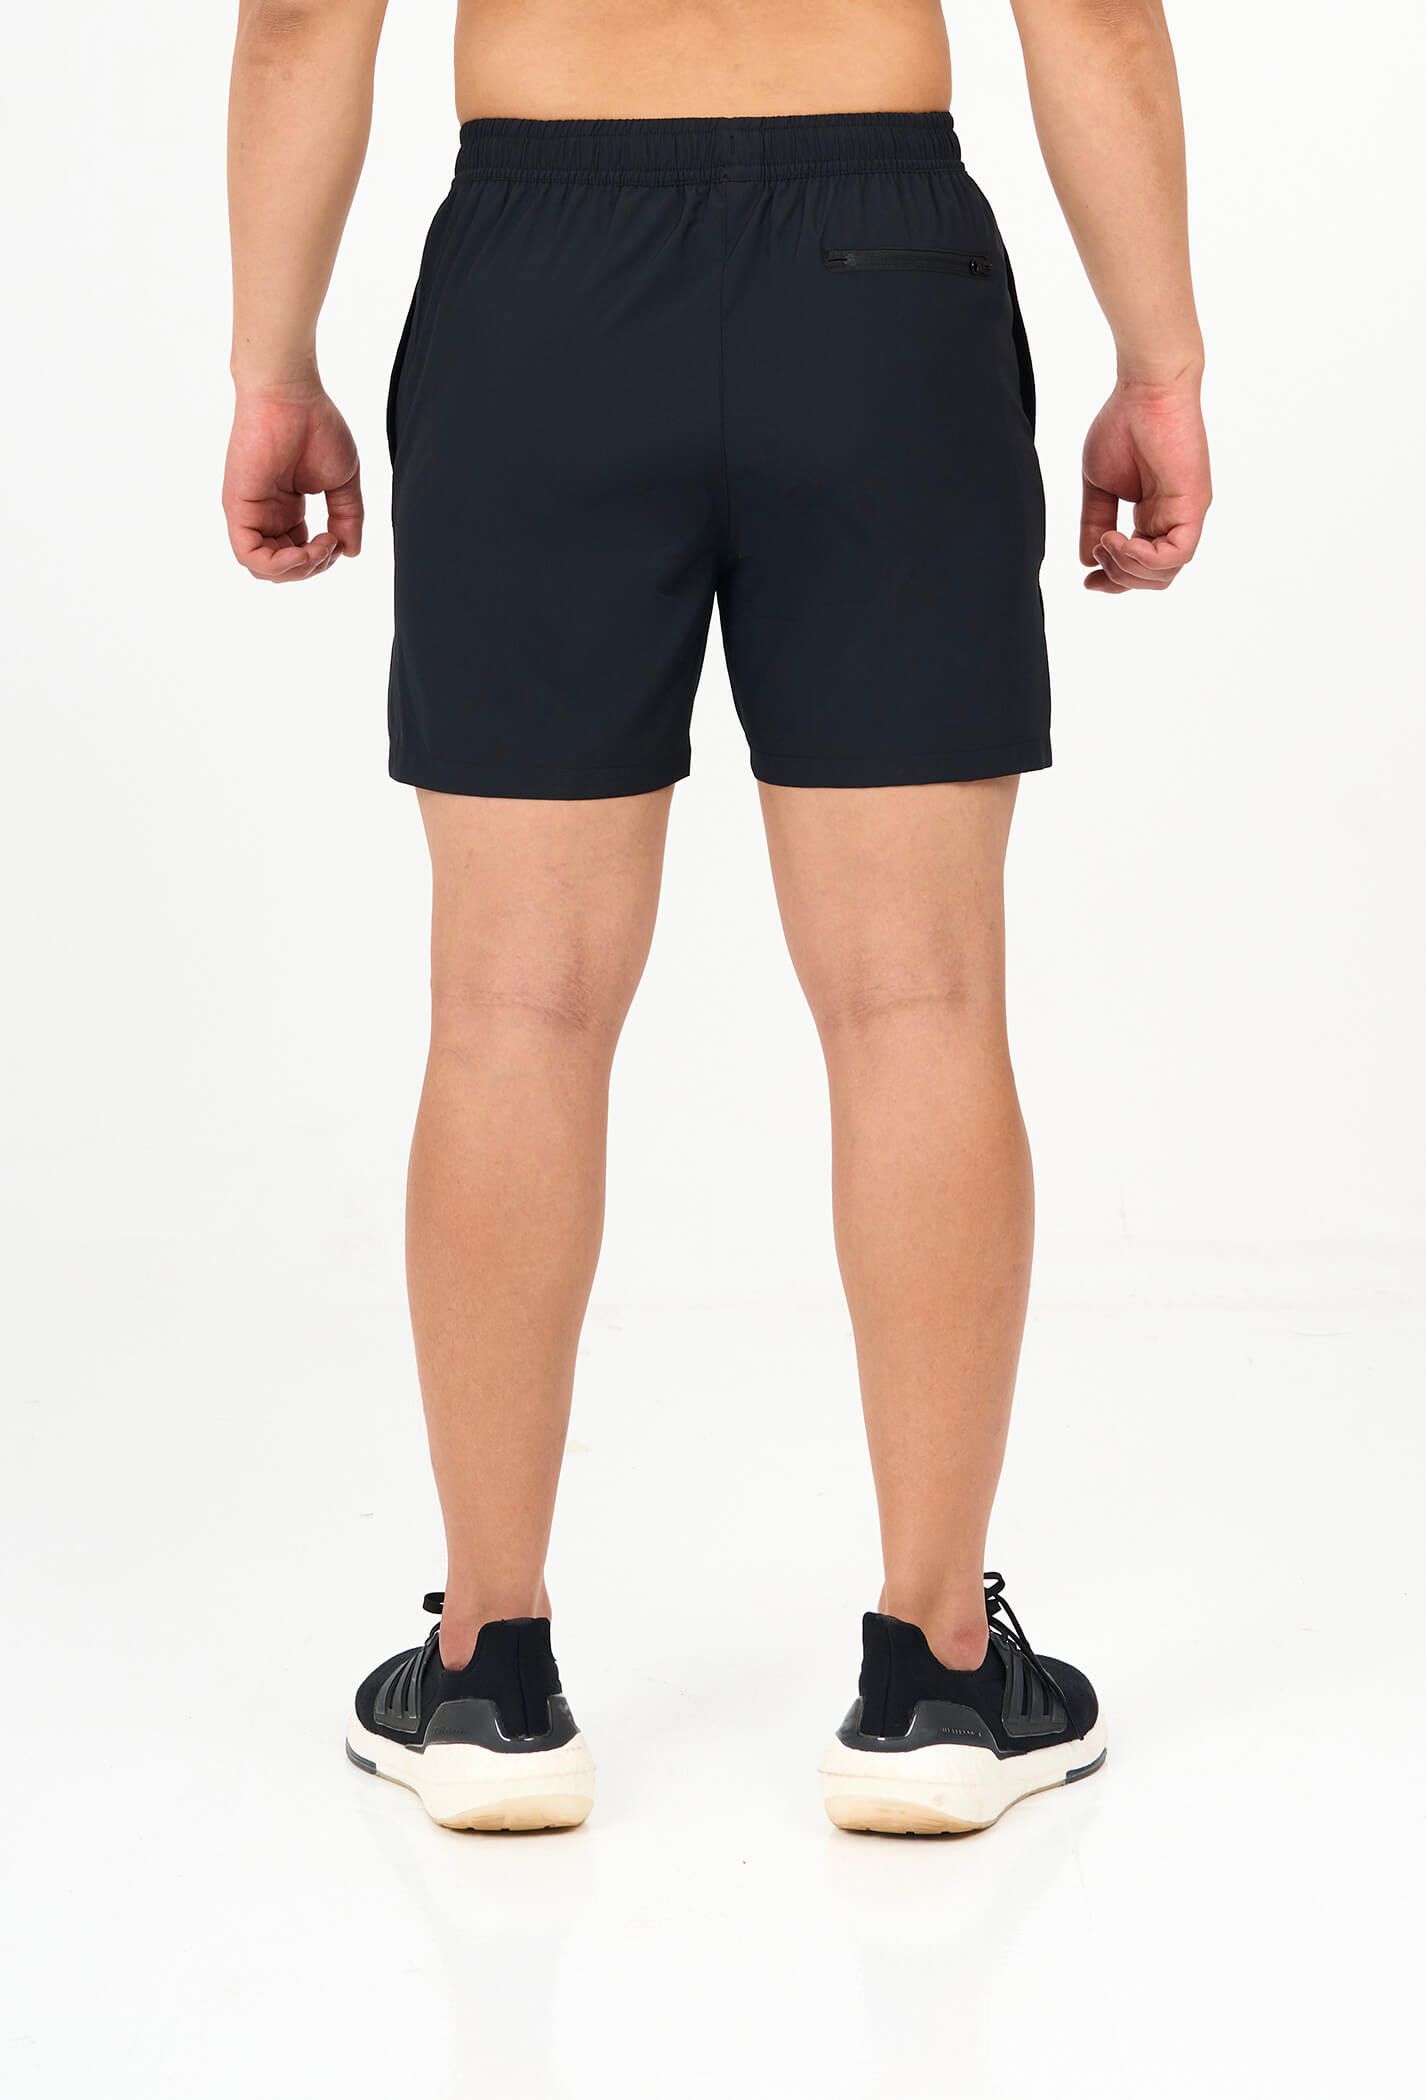 Quần shorts nam thể thao 5" xẻ gấu cao (túi sau có khóa kéo) den 3